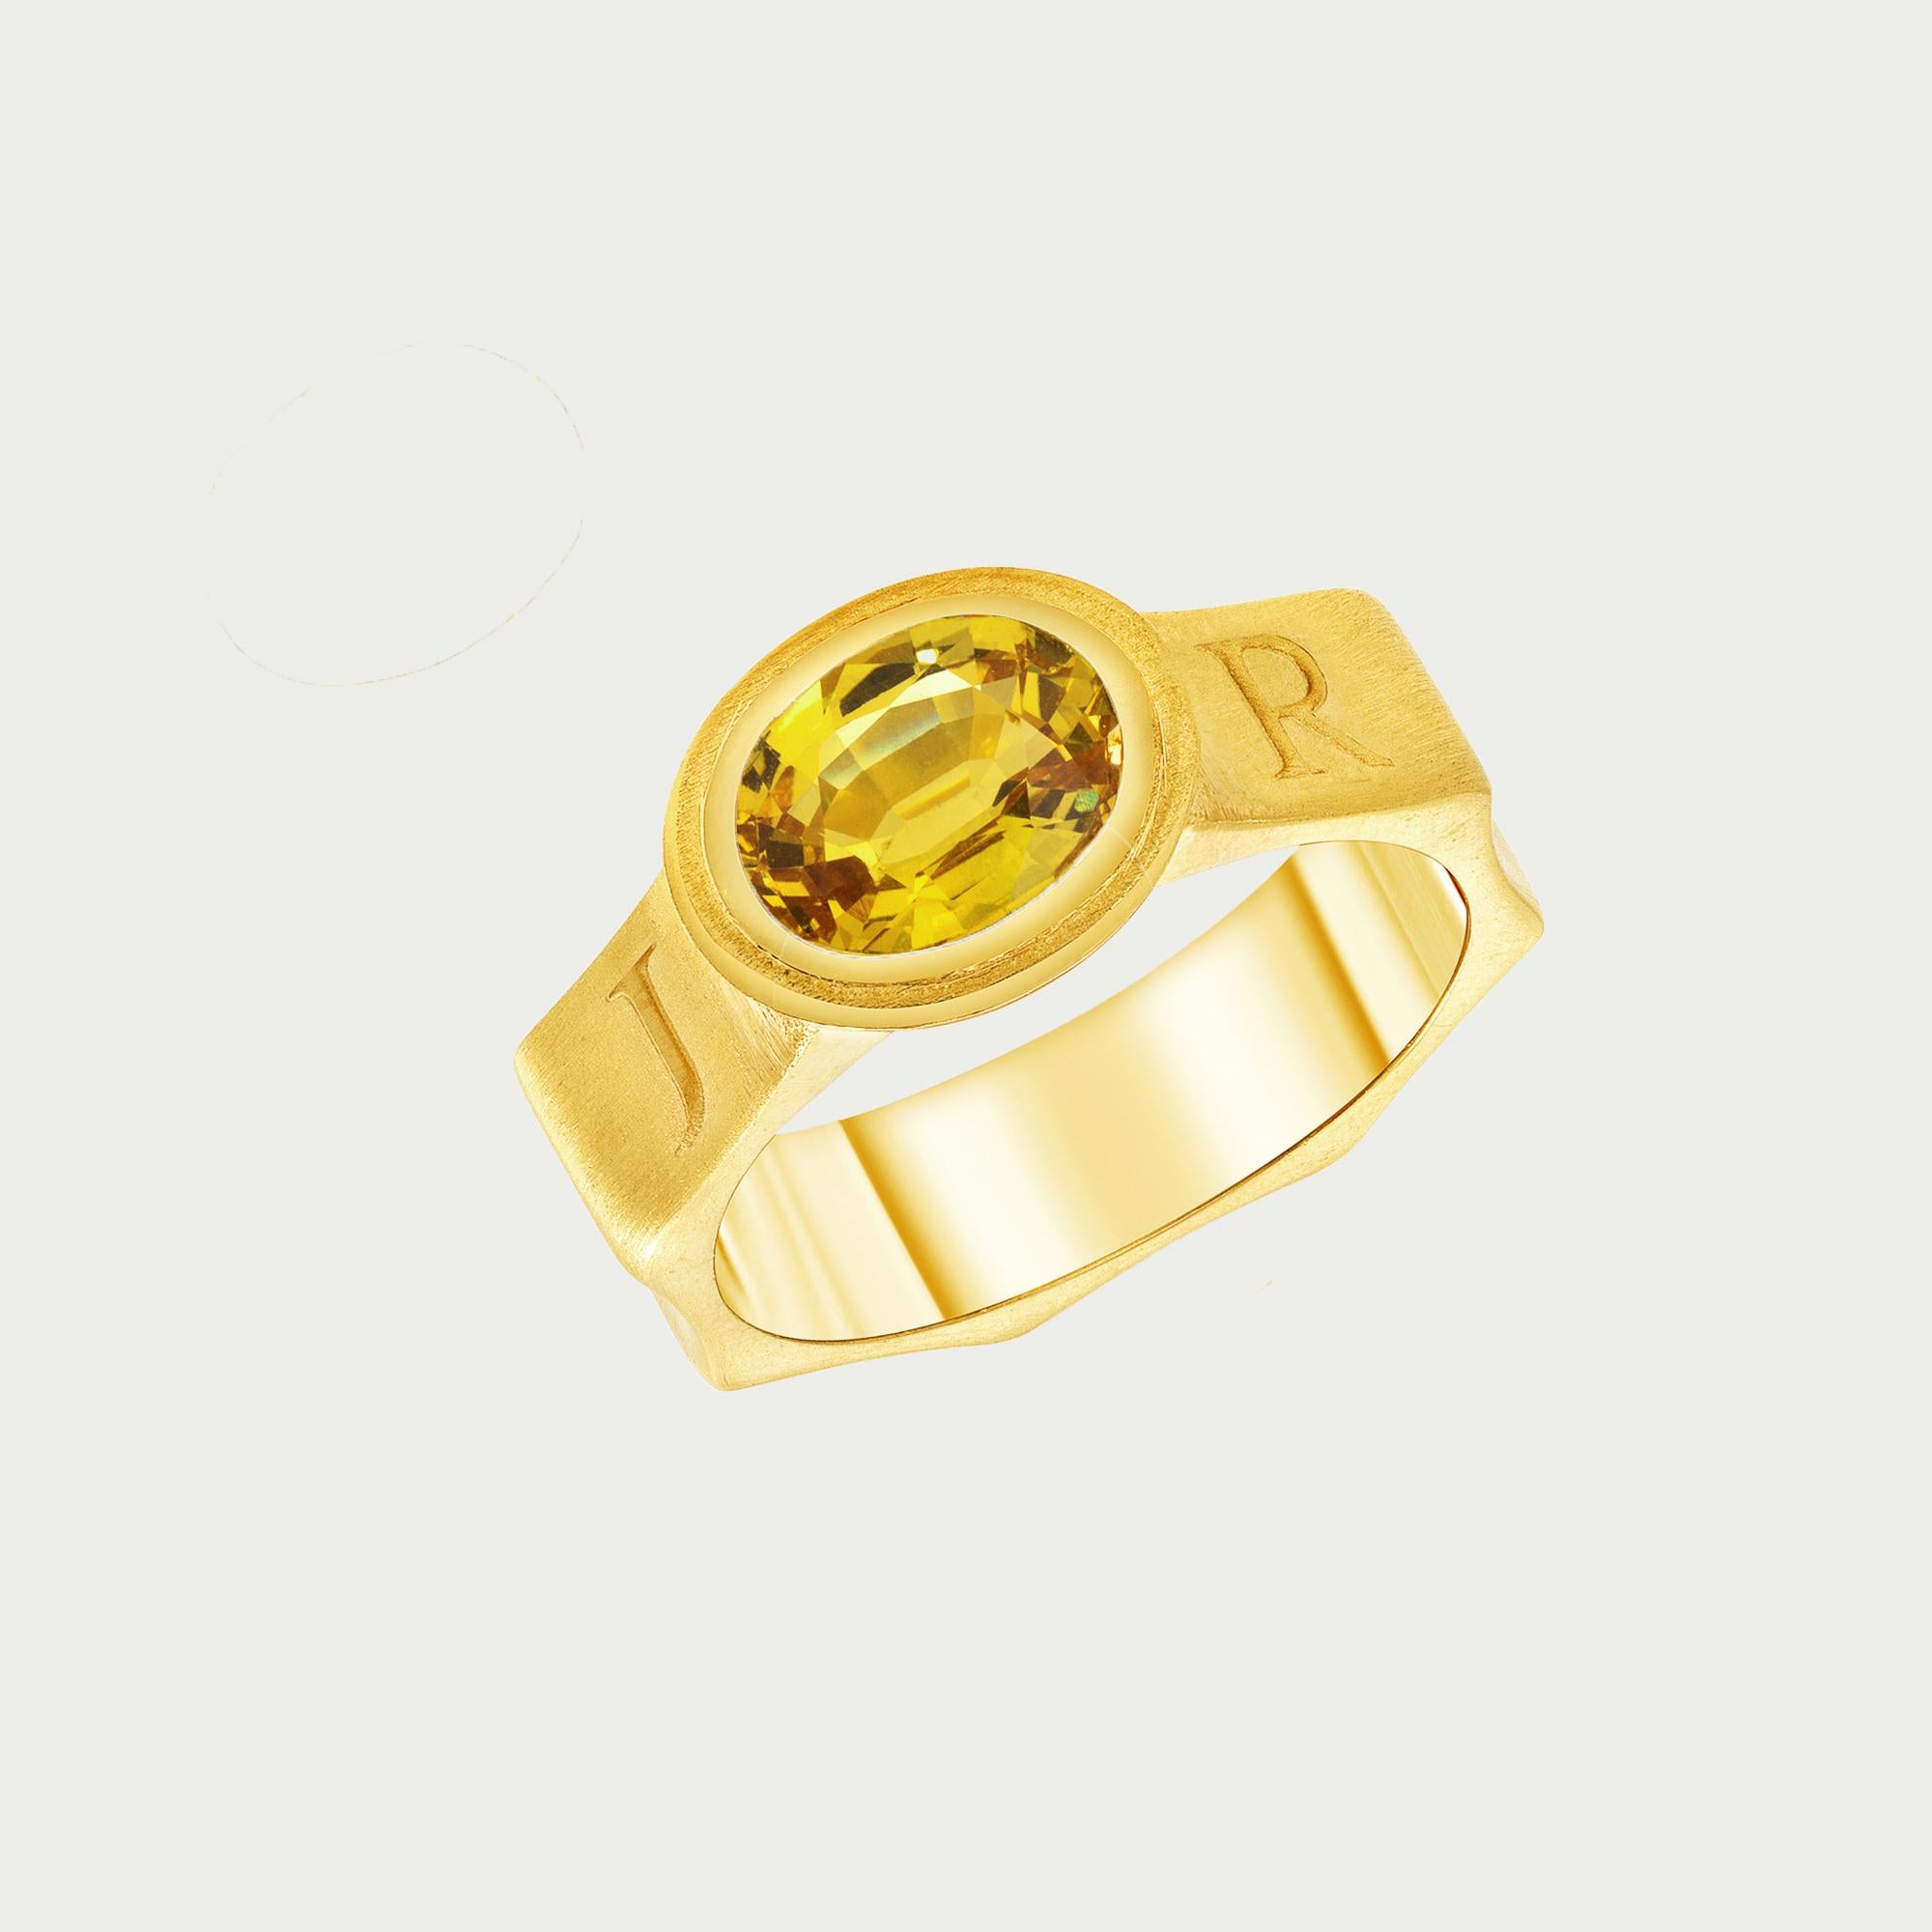 Ring mit gelbem Saphir aus 22 Karat Gelbgold 

Dieser einzigartige Ring enthält einen ovalen gelben Saphir von 2,3 Karat, der in 22-karätiges Gelbgold gefasst ist. Das Band im mittelalterlichen Stil hat eine achteckige Form, und rund um das Band ist